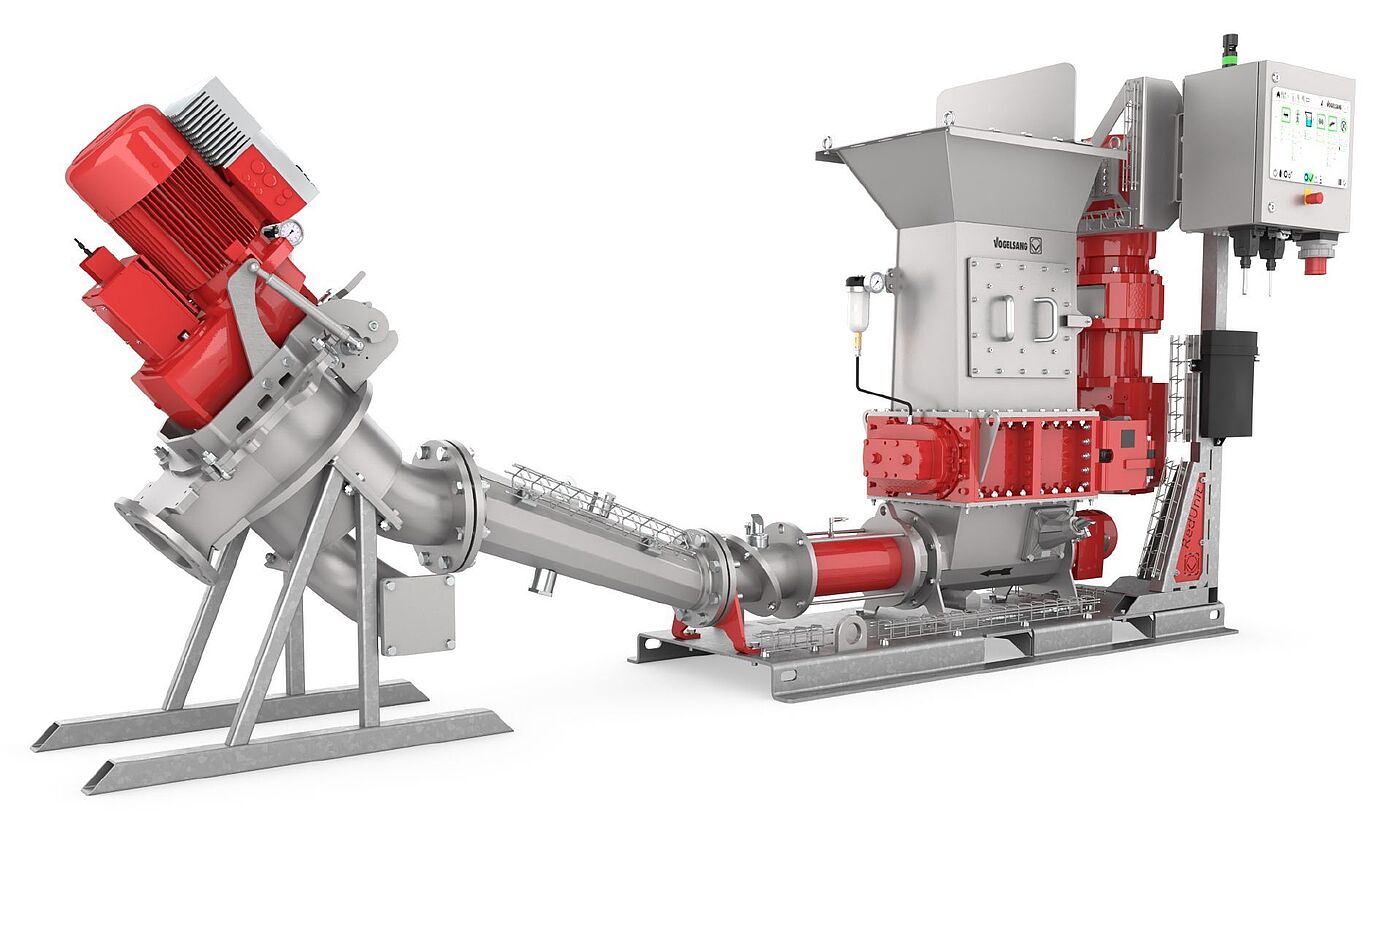 El triturador de materia sólida RedUnit combina la tecnología de trituración y bombeo